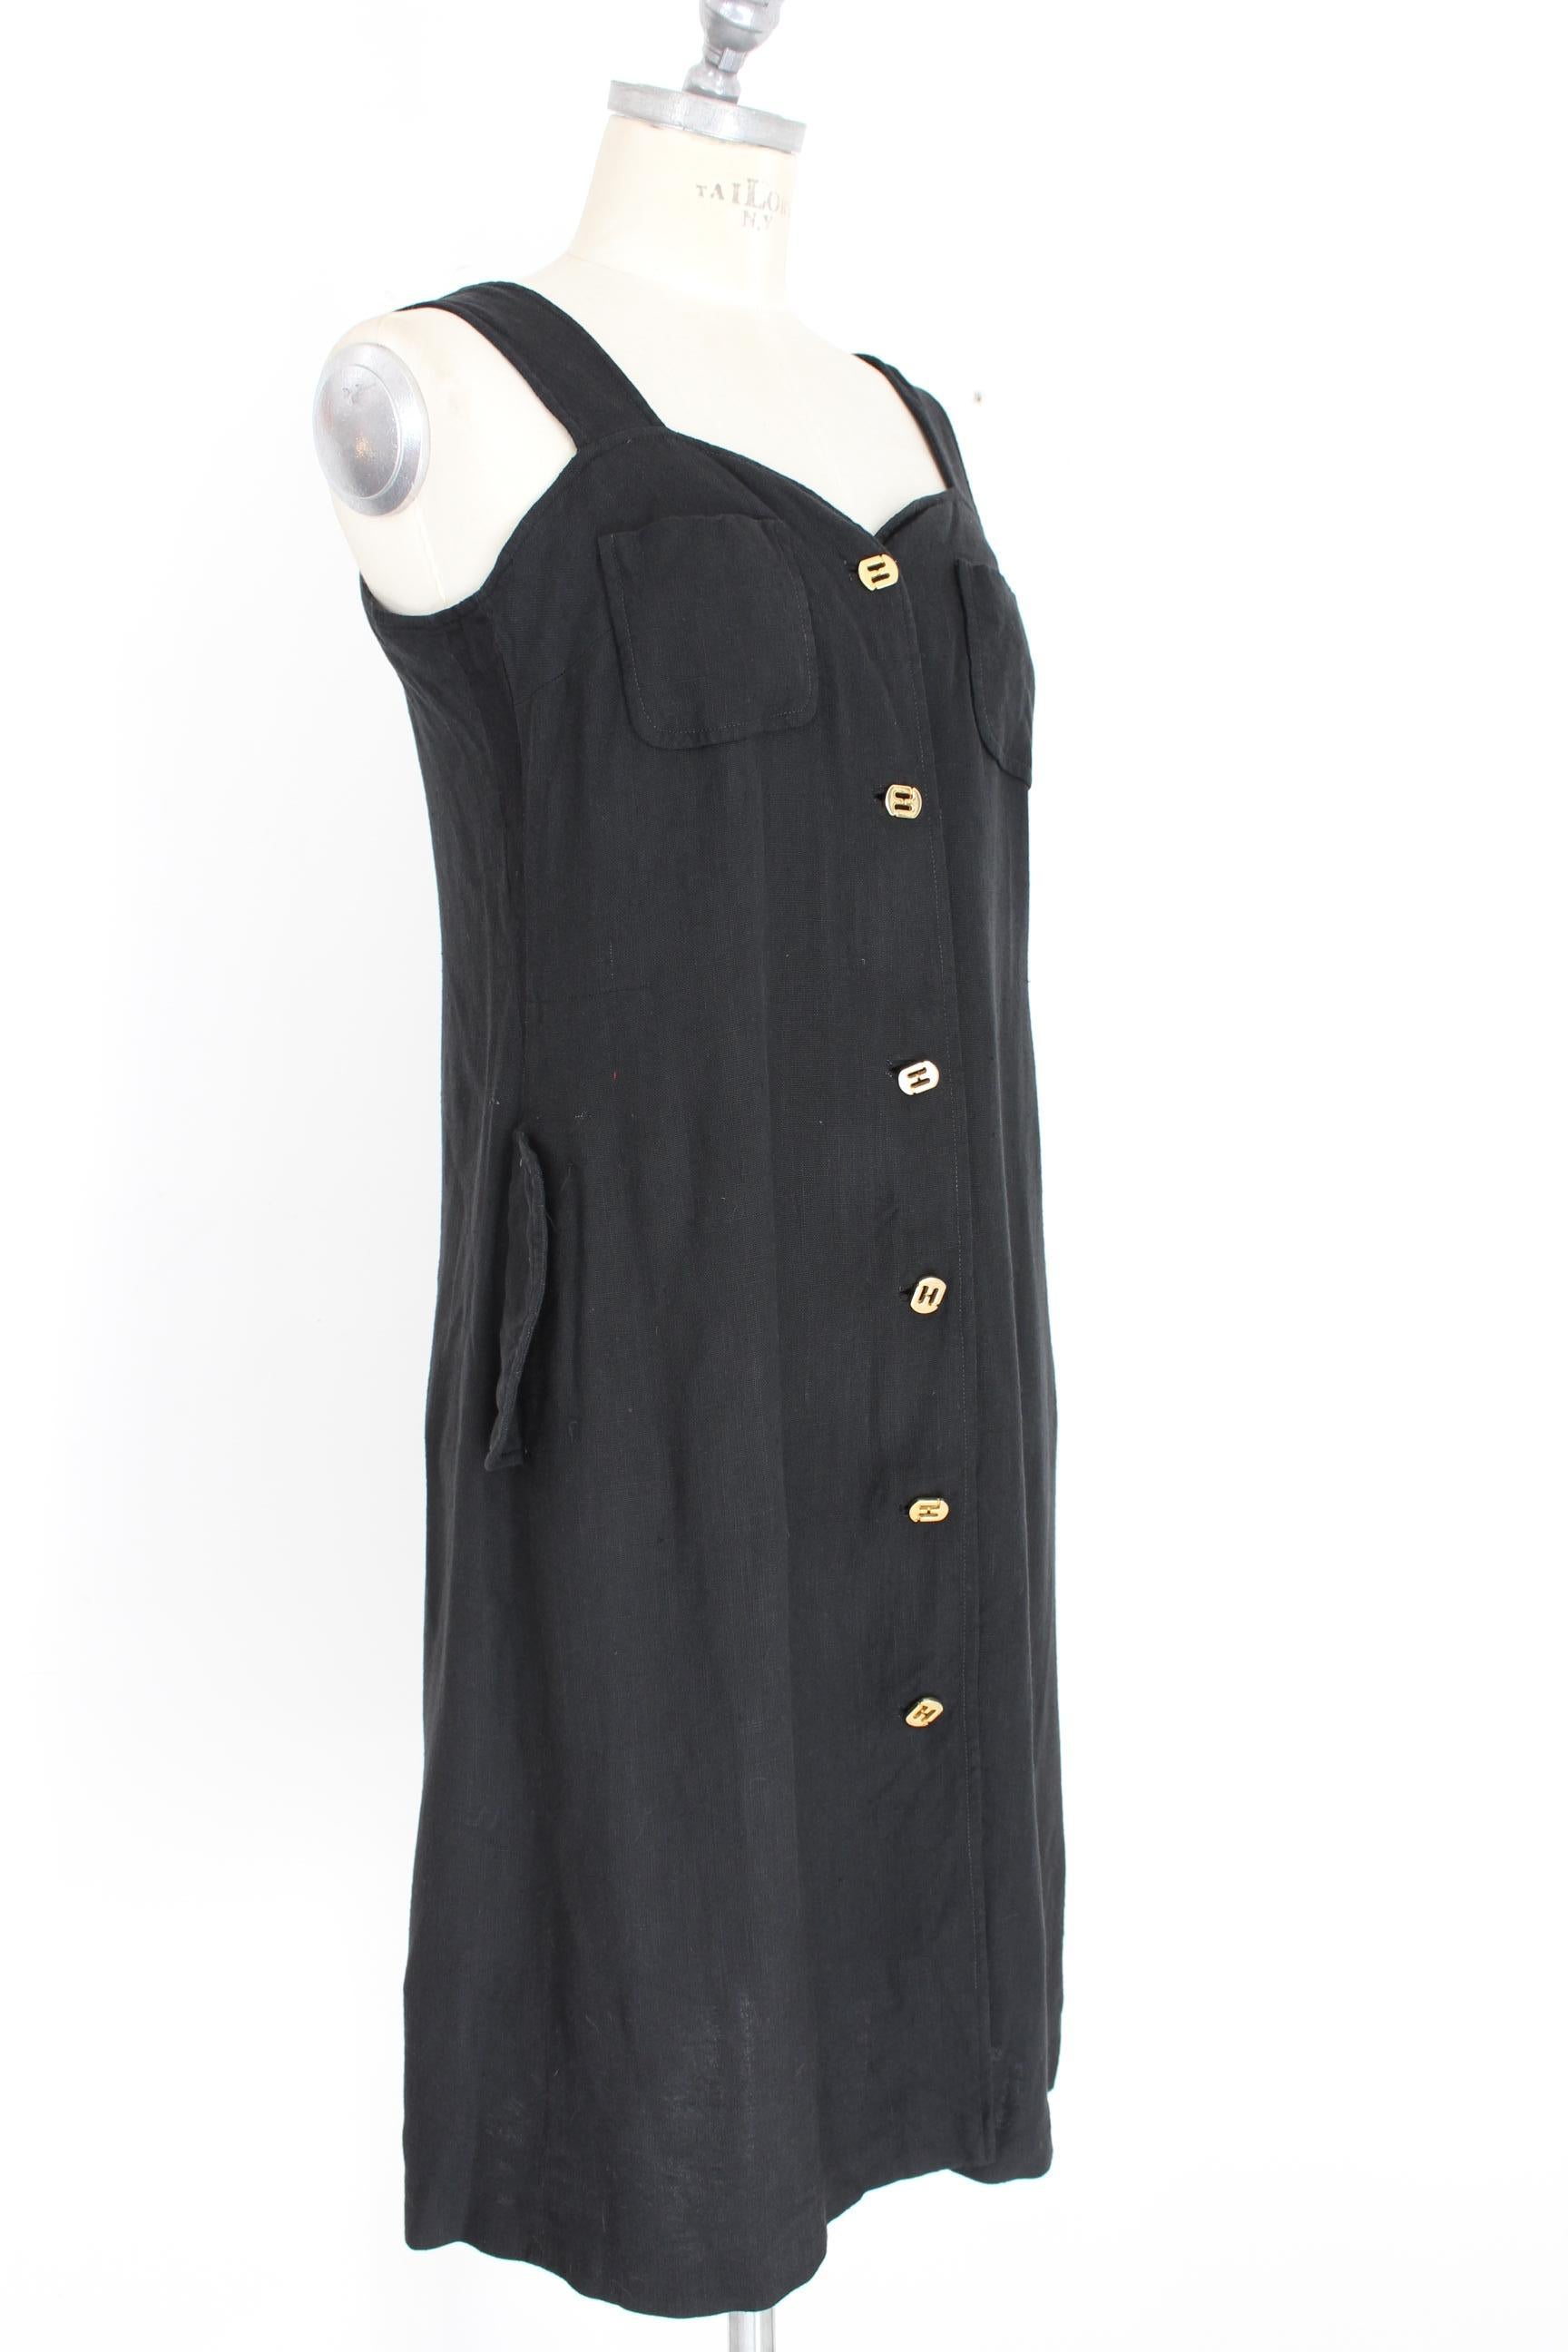 Salvatore Ferragamo Black Cocktail Suit Dress 1990s For Sale 1